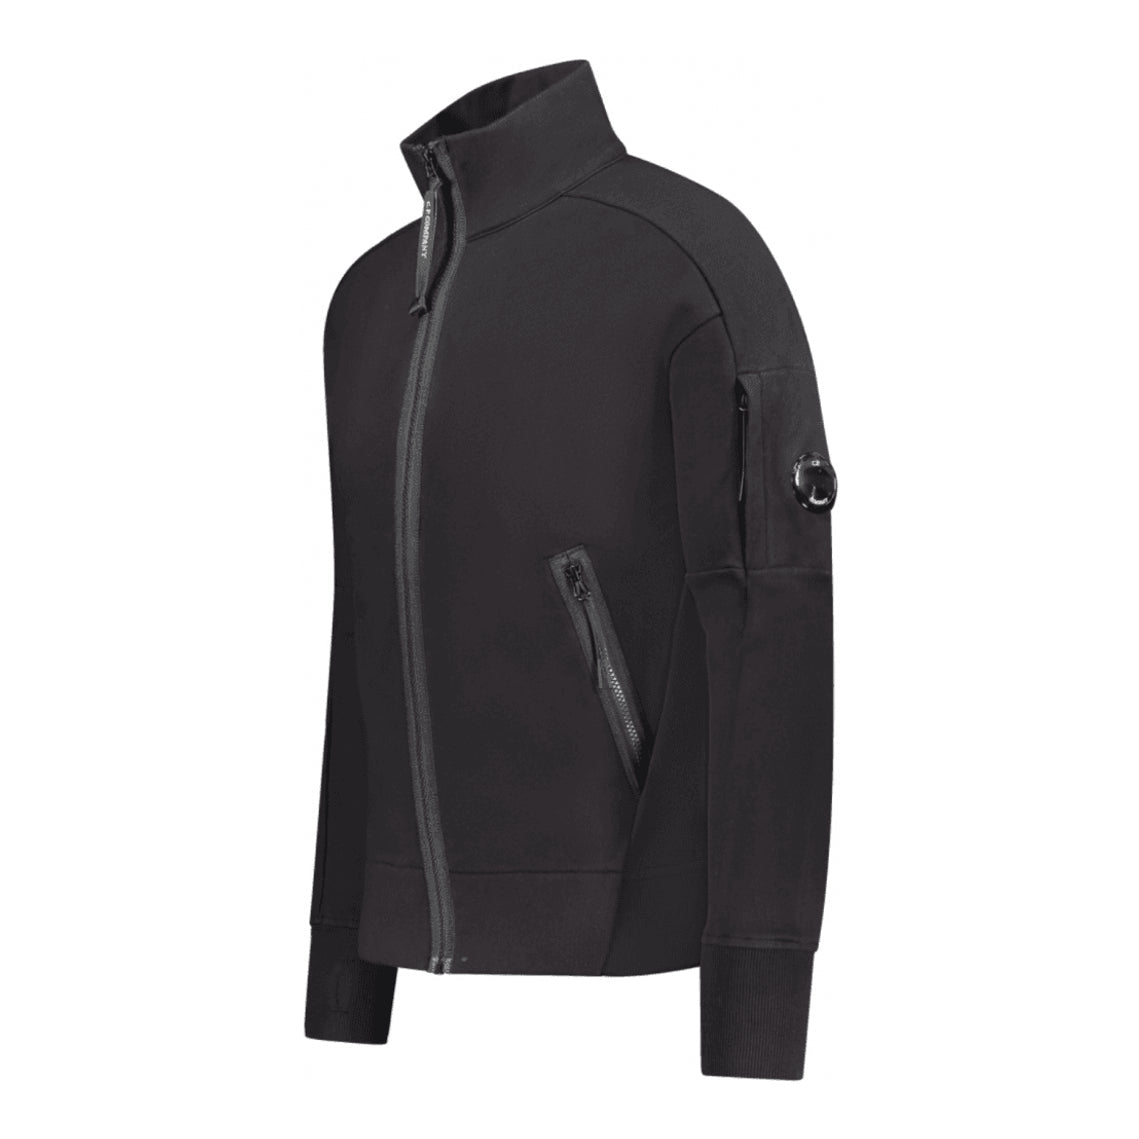 C.P. Company Zip-Through Sweatshirt - 999 Black - Escape Menswear